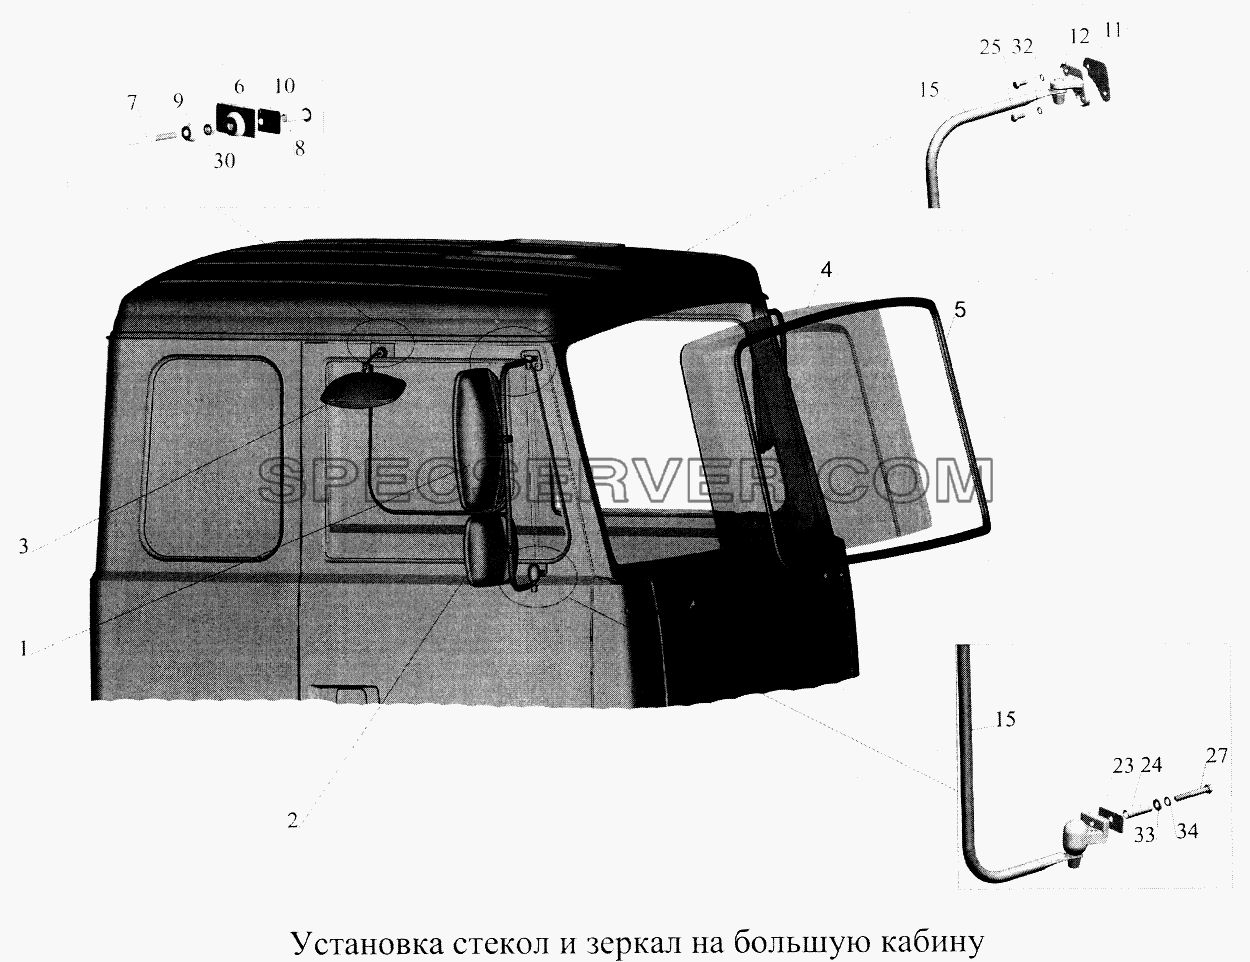 Установка стекол и зеркал на большую кабину для МАЗ-5516А5 (список запасных частей)